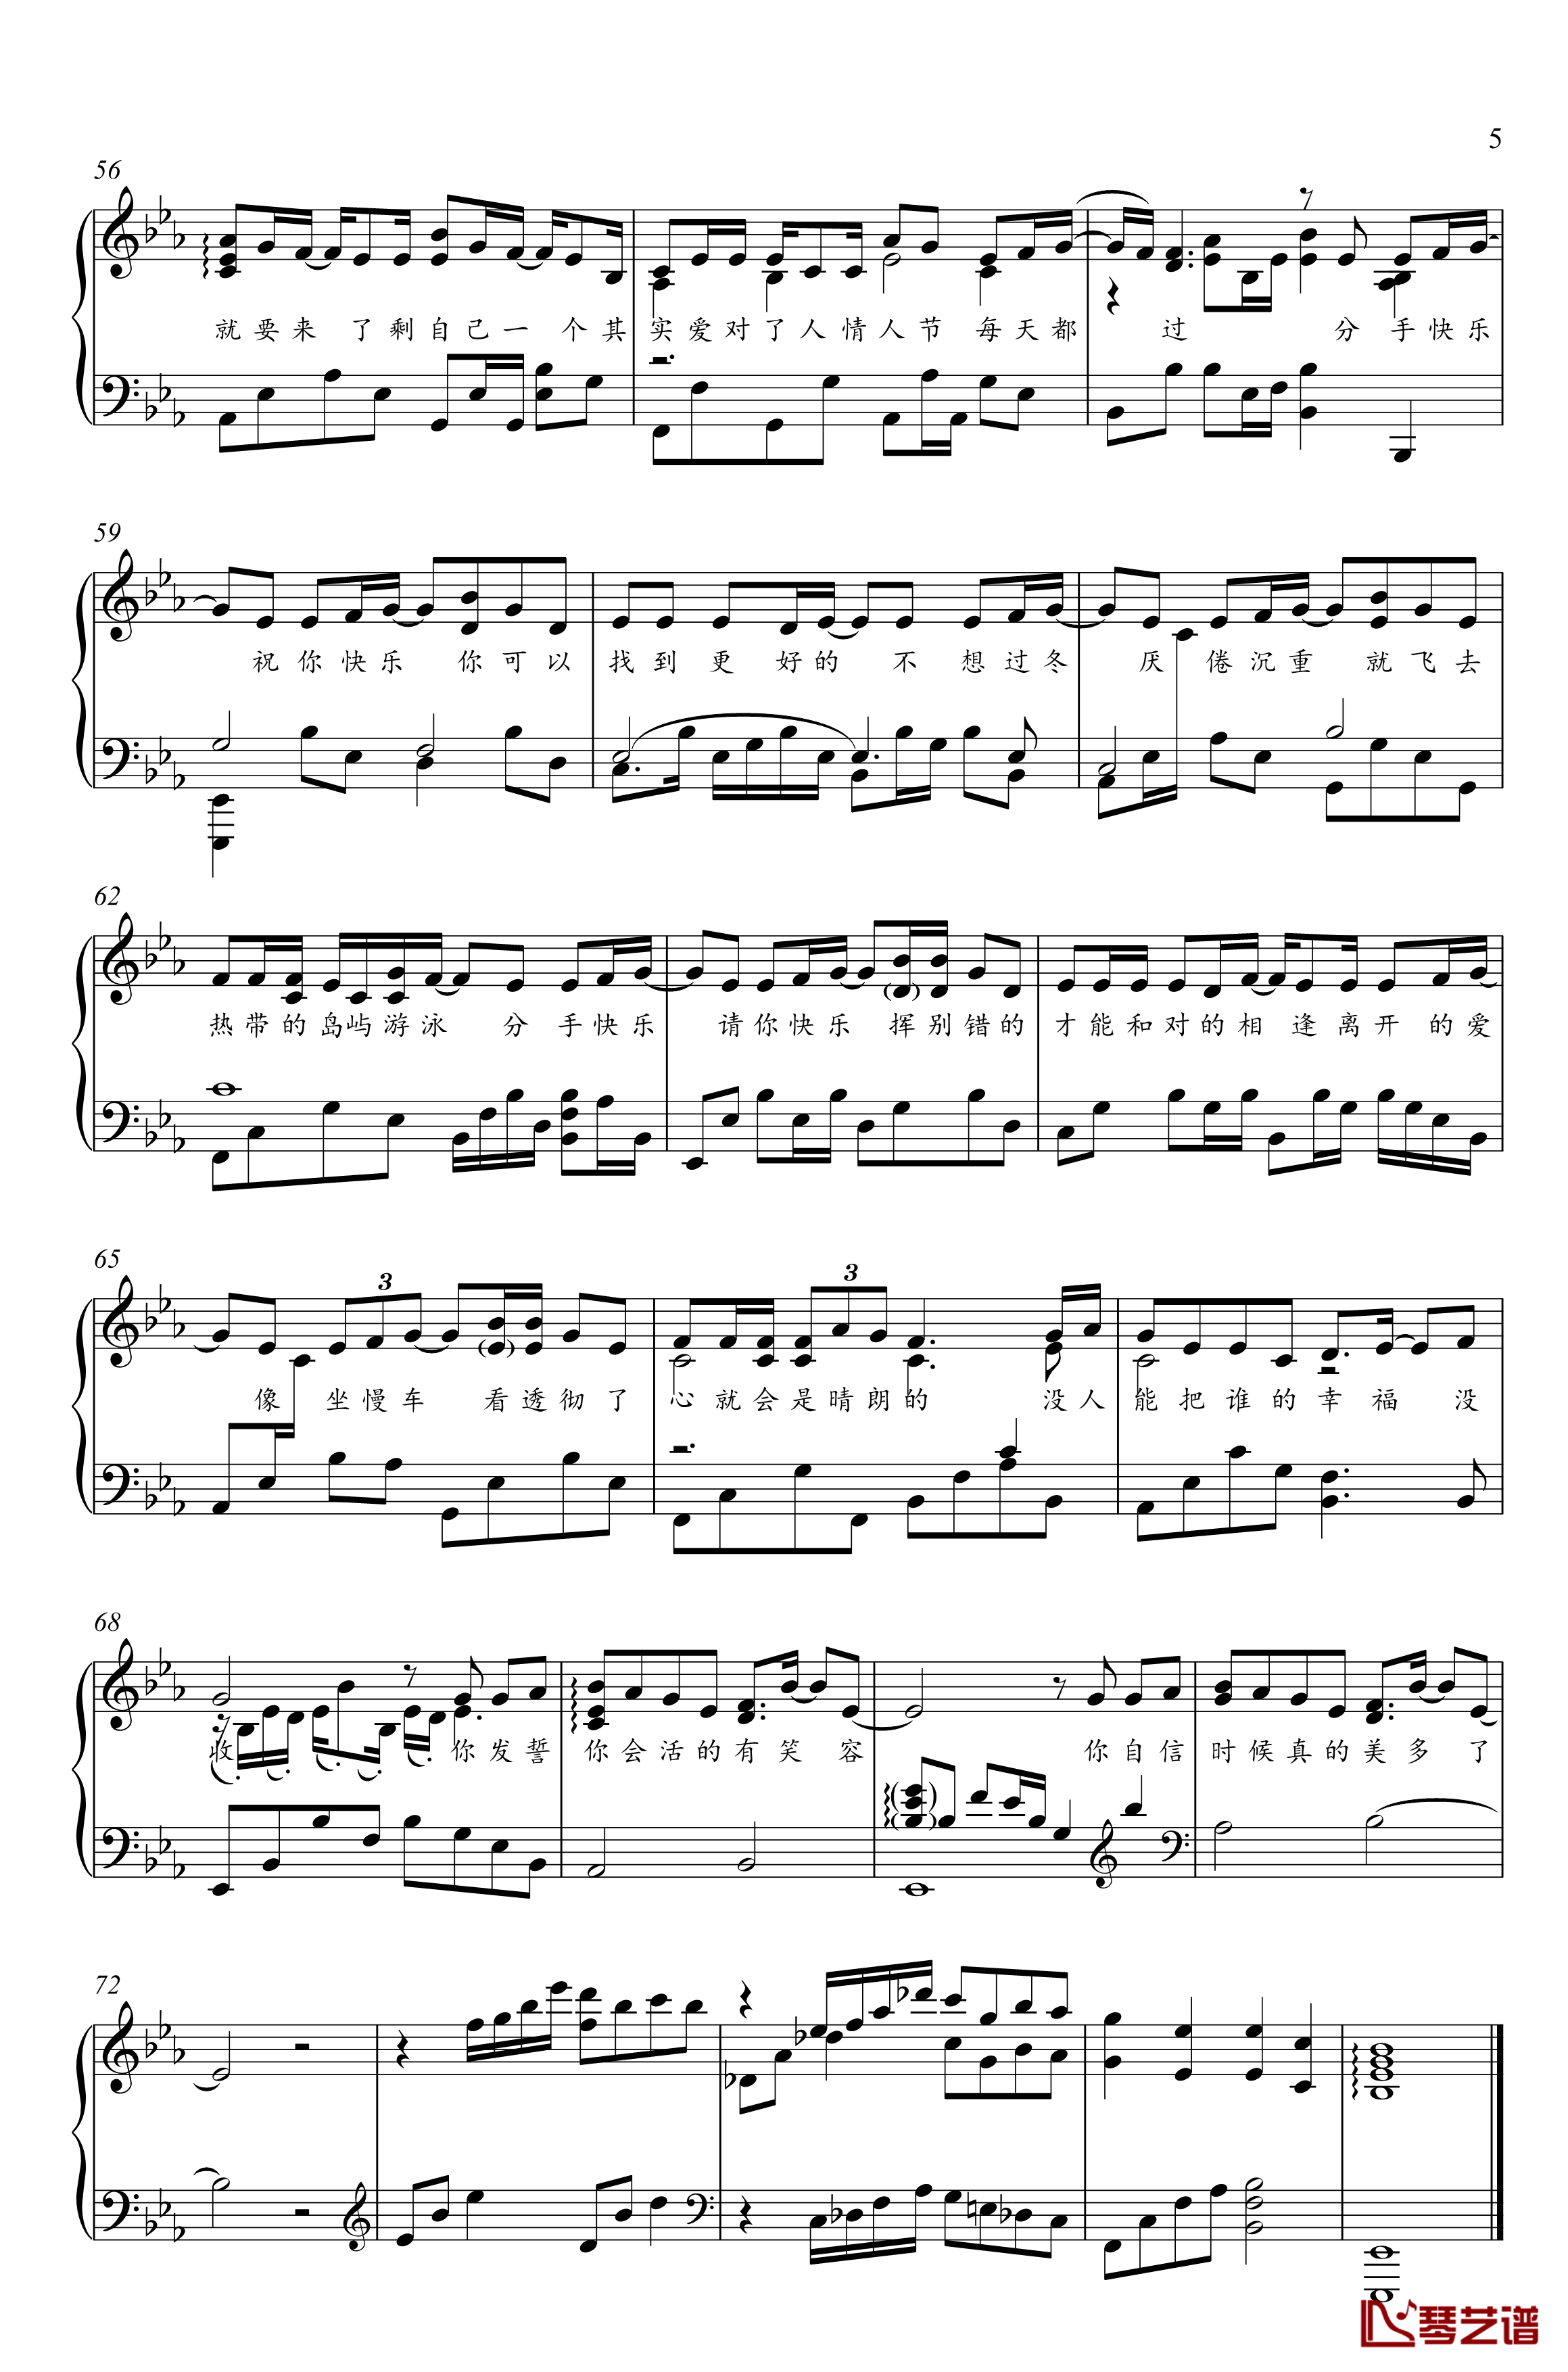 分手快乐钢琴谱-梁静茹-金老师钢琴独奏谱1910315